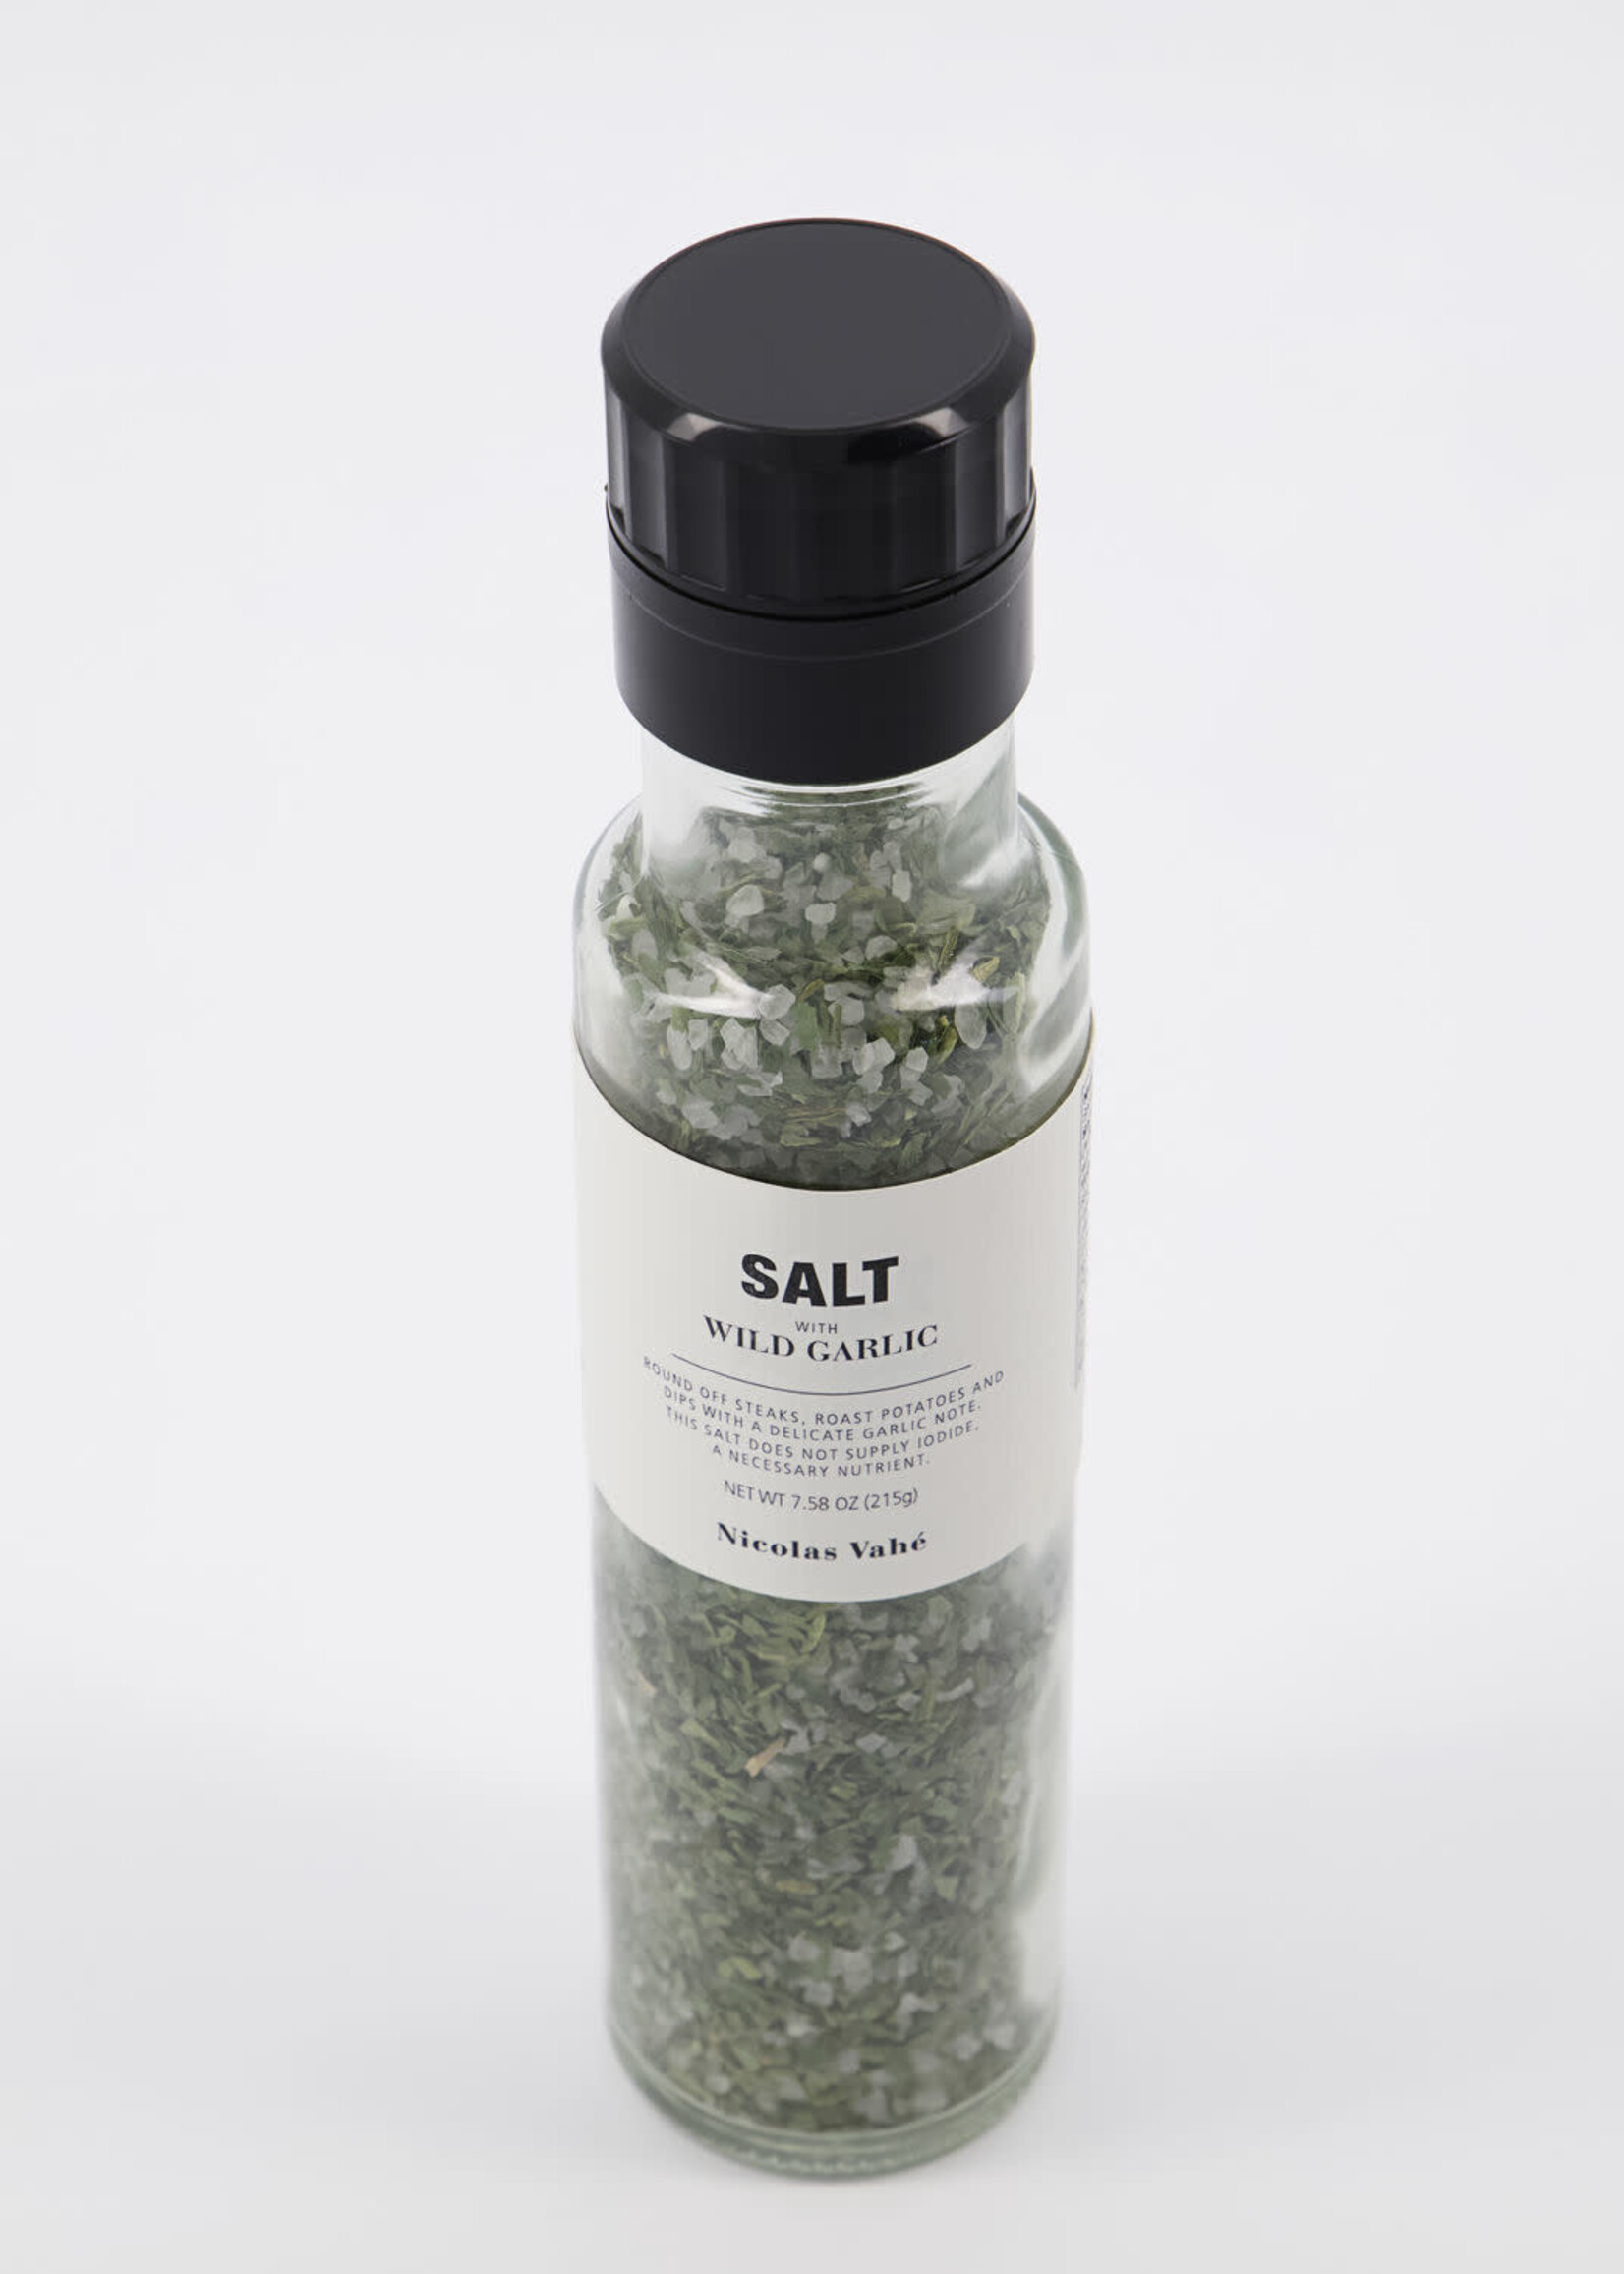 Nicolas Vahe Salt, Wild Garlic